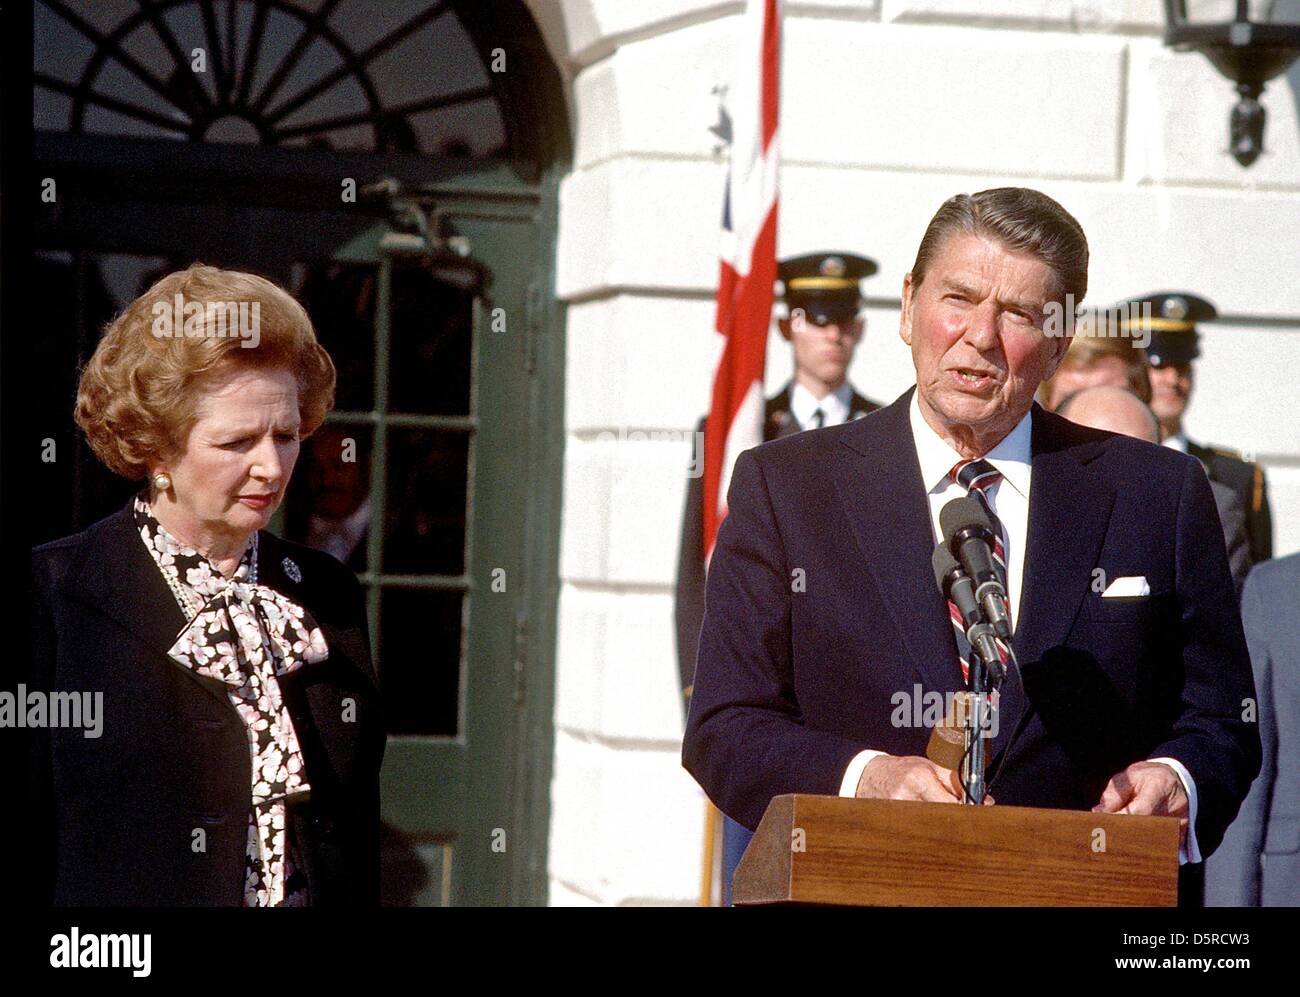 Bilder-Datei: US-Präsident Ronald Reagan, Recht, eine gemeinsame Erklärung Fragen, als Premierministerin Margaret Thatcher von Großbritannien, links, vor dem diplomatischen Eingang des weißen Hauses nach ihrem zweistündigen treffen in Washington, D.C. am Mittwoch, 20. Februar 1985 hört. Thatcher starb an einem Schlaganfall bei 87 Montag, 8. April 2013. Bildnachweis: Arnie Sachs / CNP/Alamy Live News Stockfoto